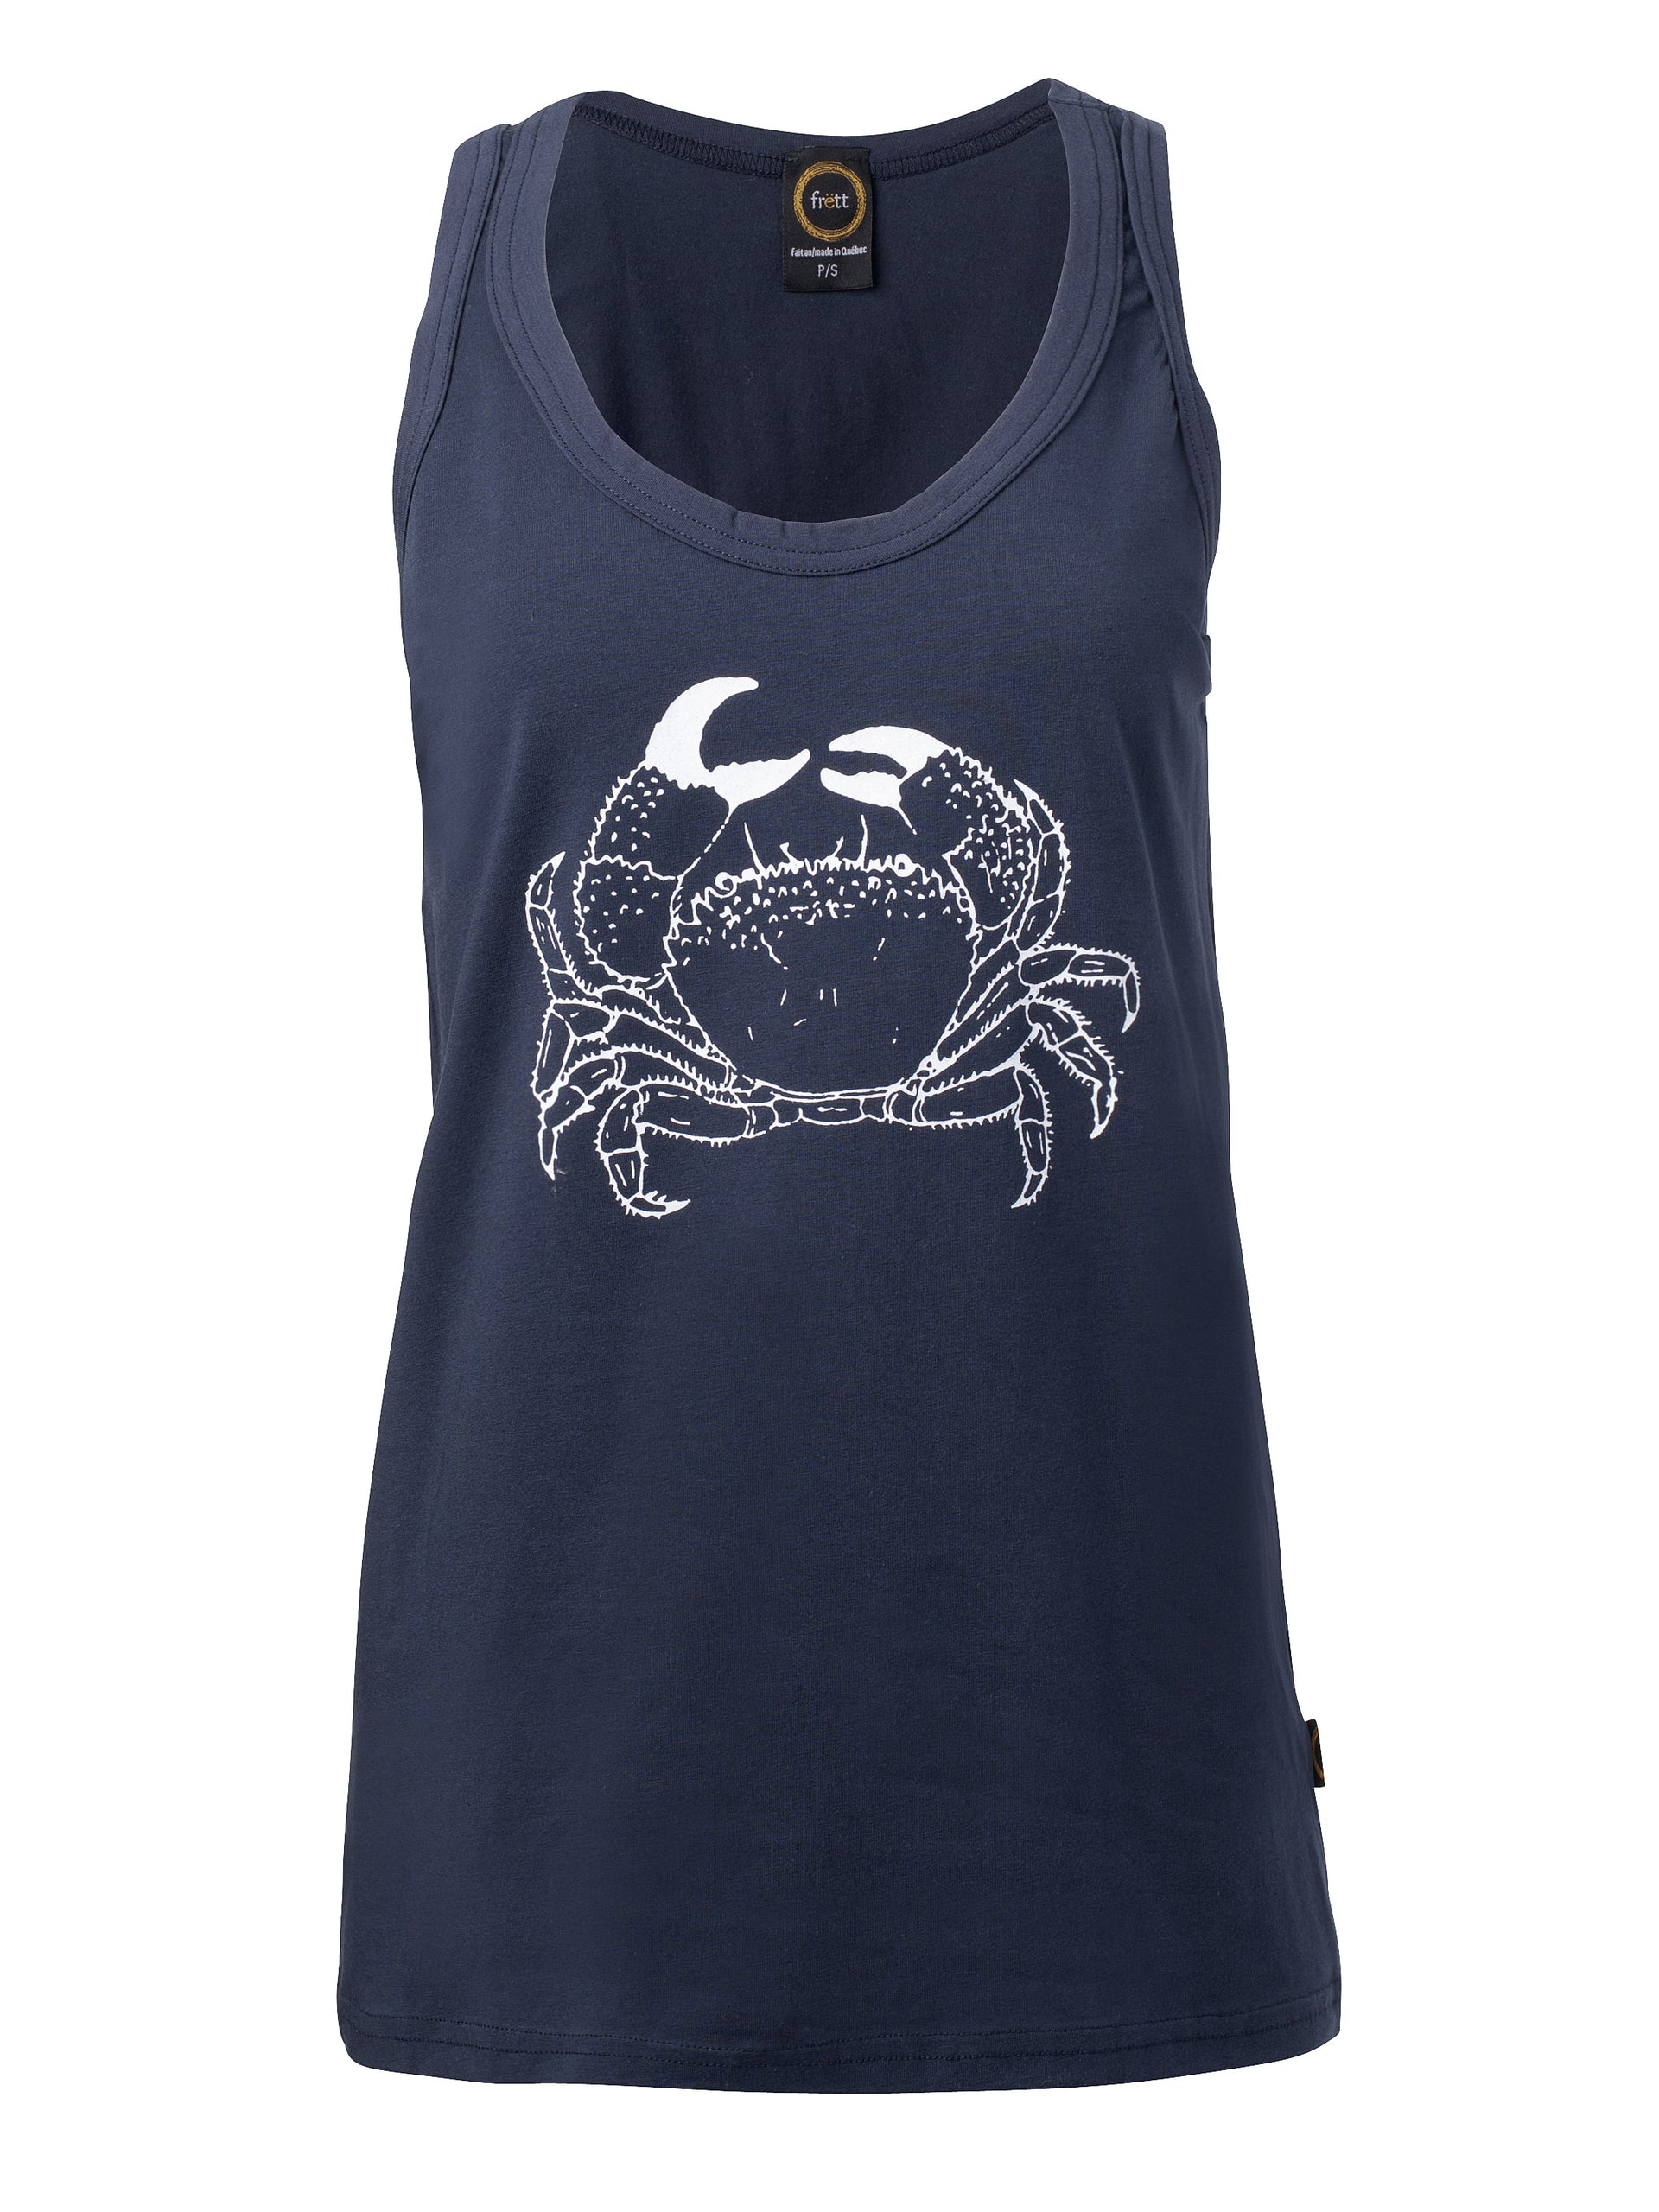 Camisole-CAMI crabe-coton bio-marine-unisexe-ghost femme-FC14